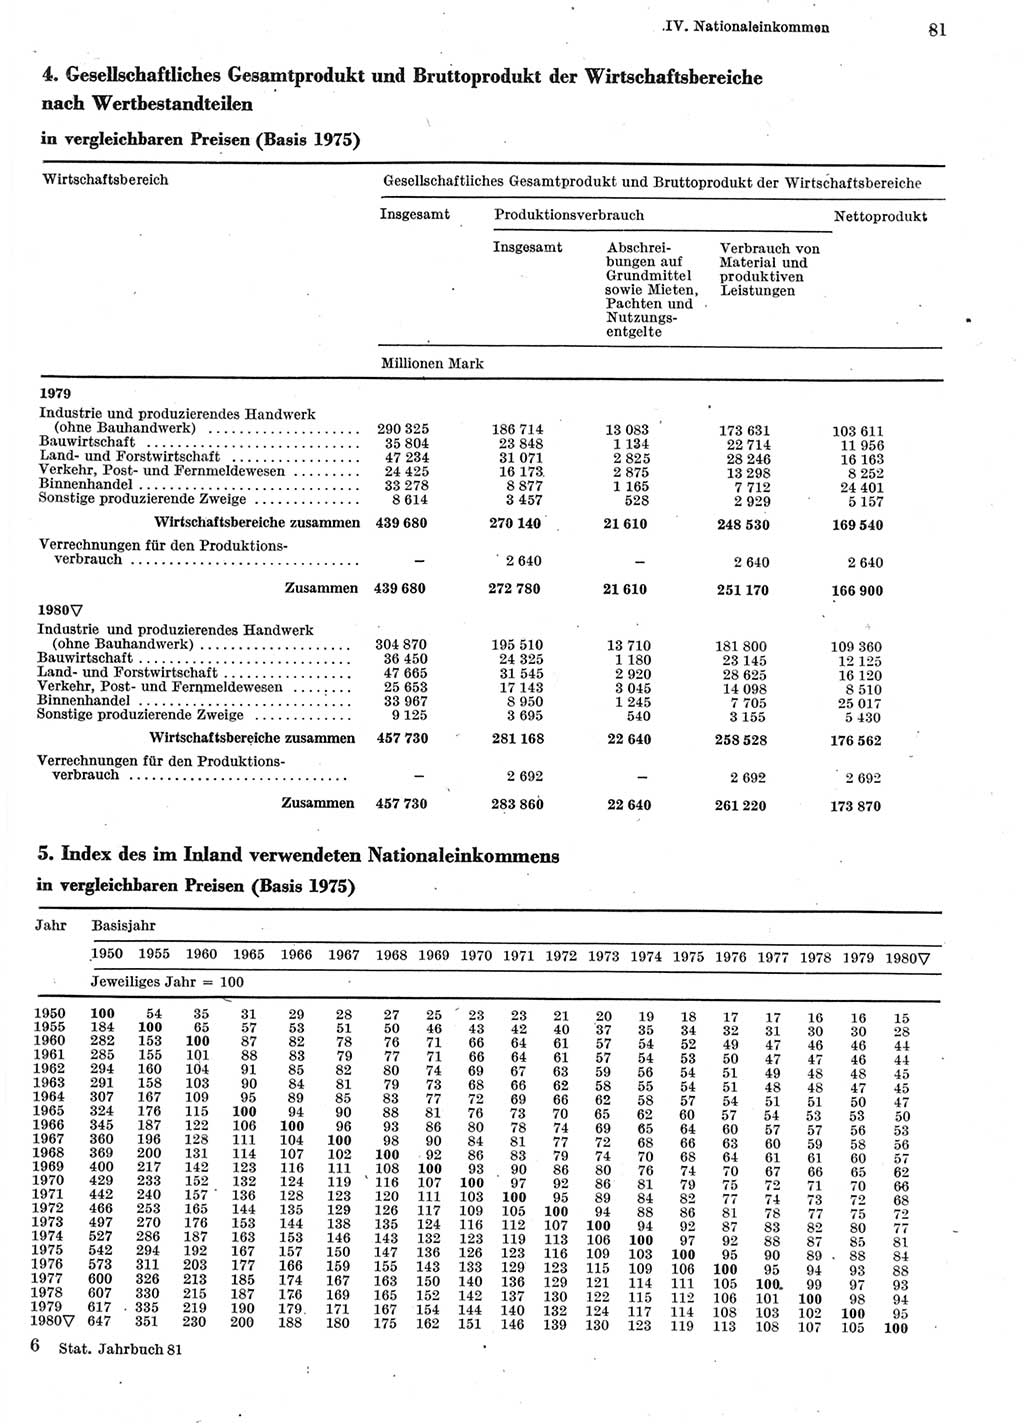 Statistisches Jahrbuch der Deutschen Demokratischen Republik (DDR) 1981, Seite 81 (Stat. Jb. DDR 1981, S. 81)